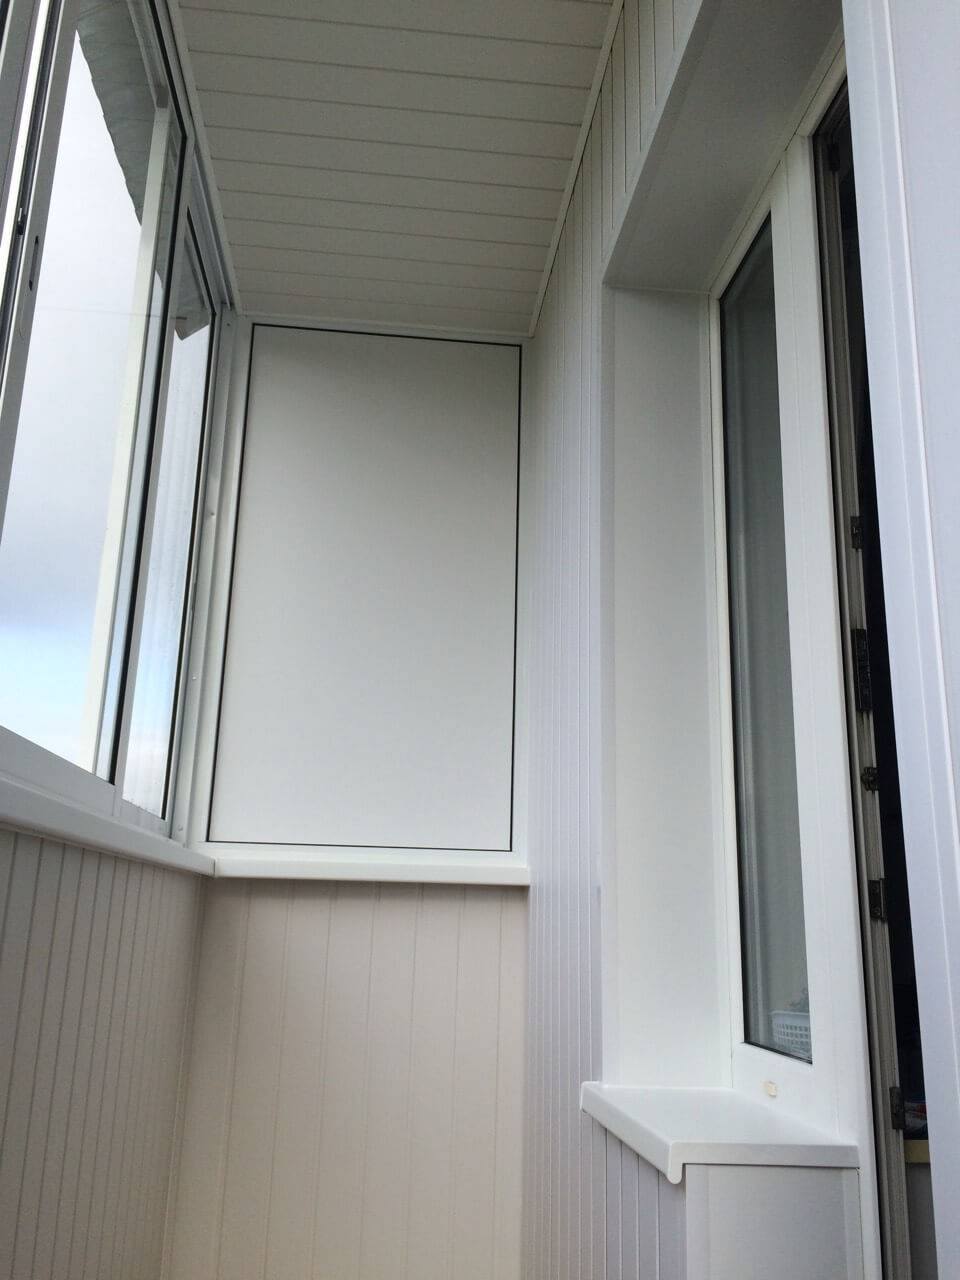 Внутренняя отделка балкона своими руками: пошаговая инструкция, фото оформления разными вариантами материалов